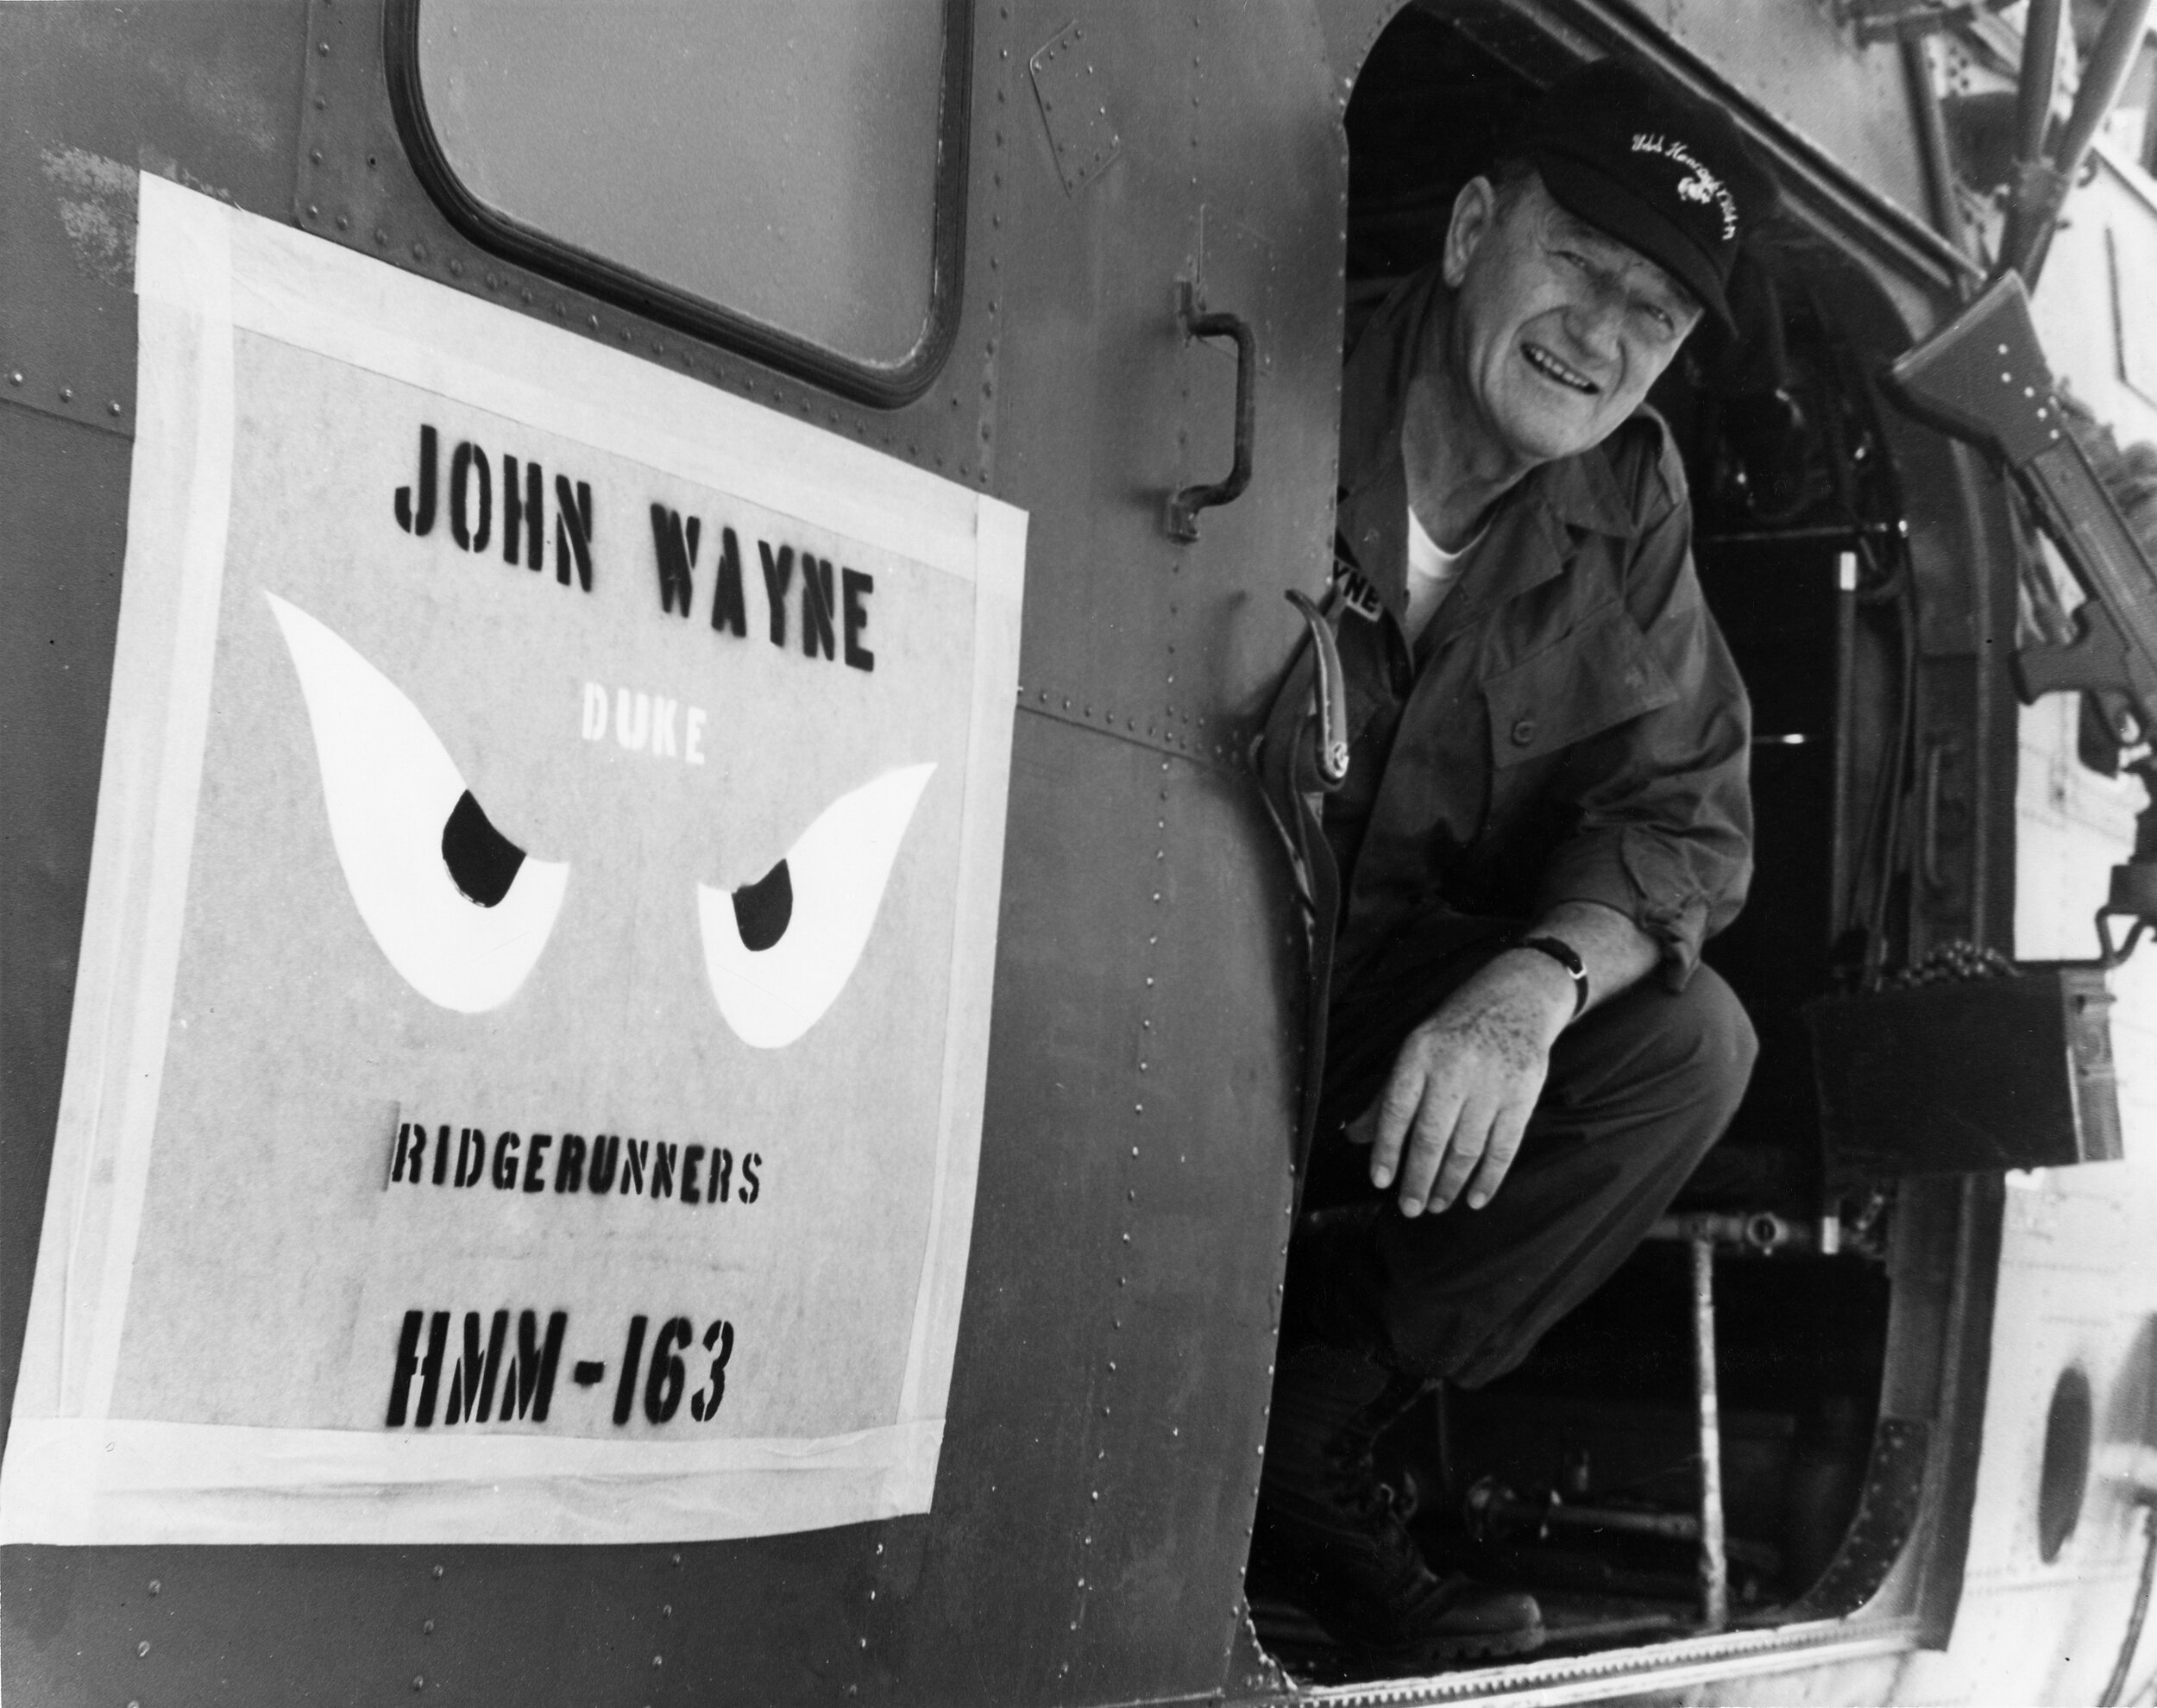 John Wayne in Vietnam during his USO Tour.